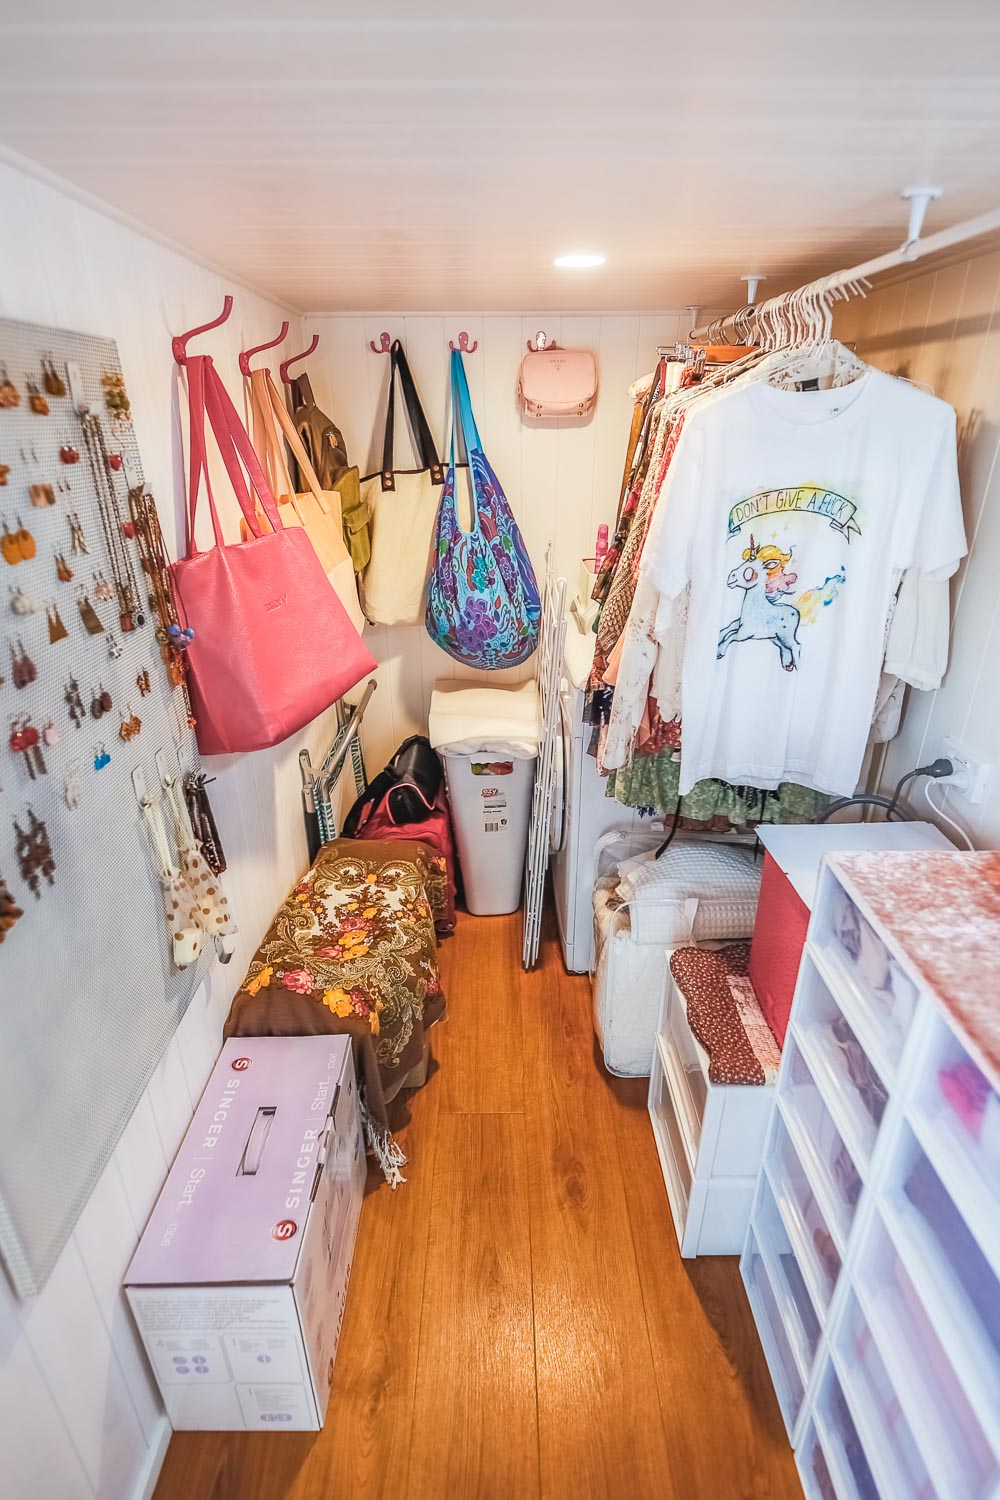 Tiny House Closets To Inspire Your Closet Design - The Tiny Life